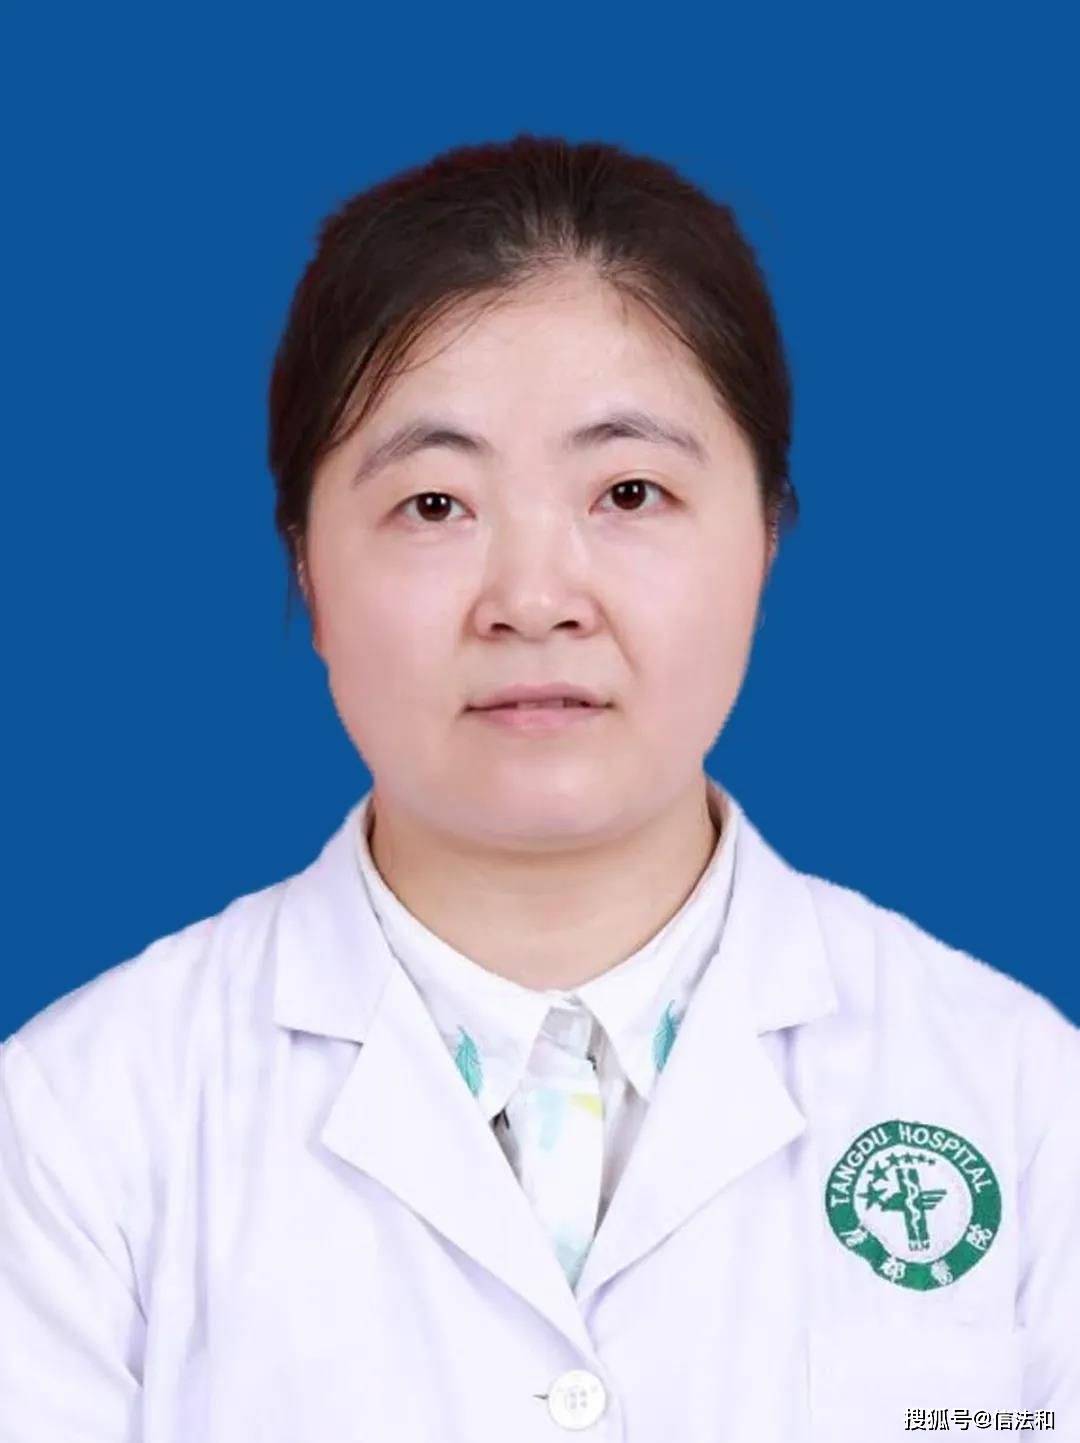 唐都医院神经外科赵天智副教授受邀至汉中3201医院进行颅底手术入路高级培训